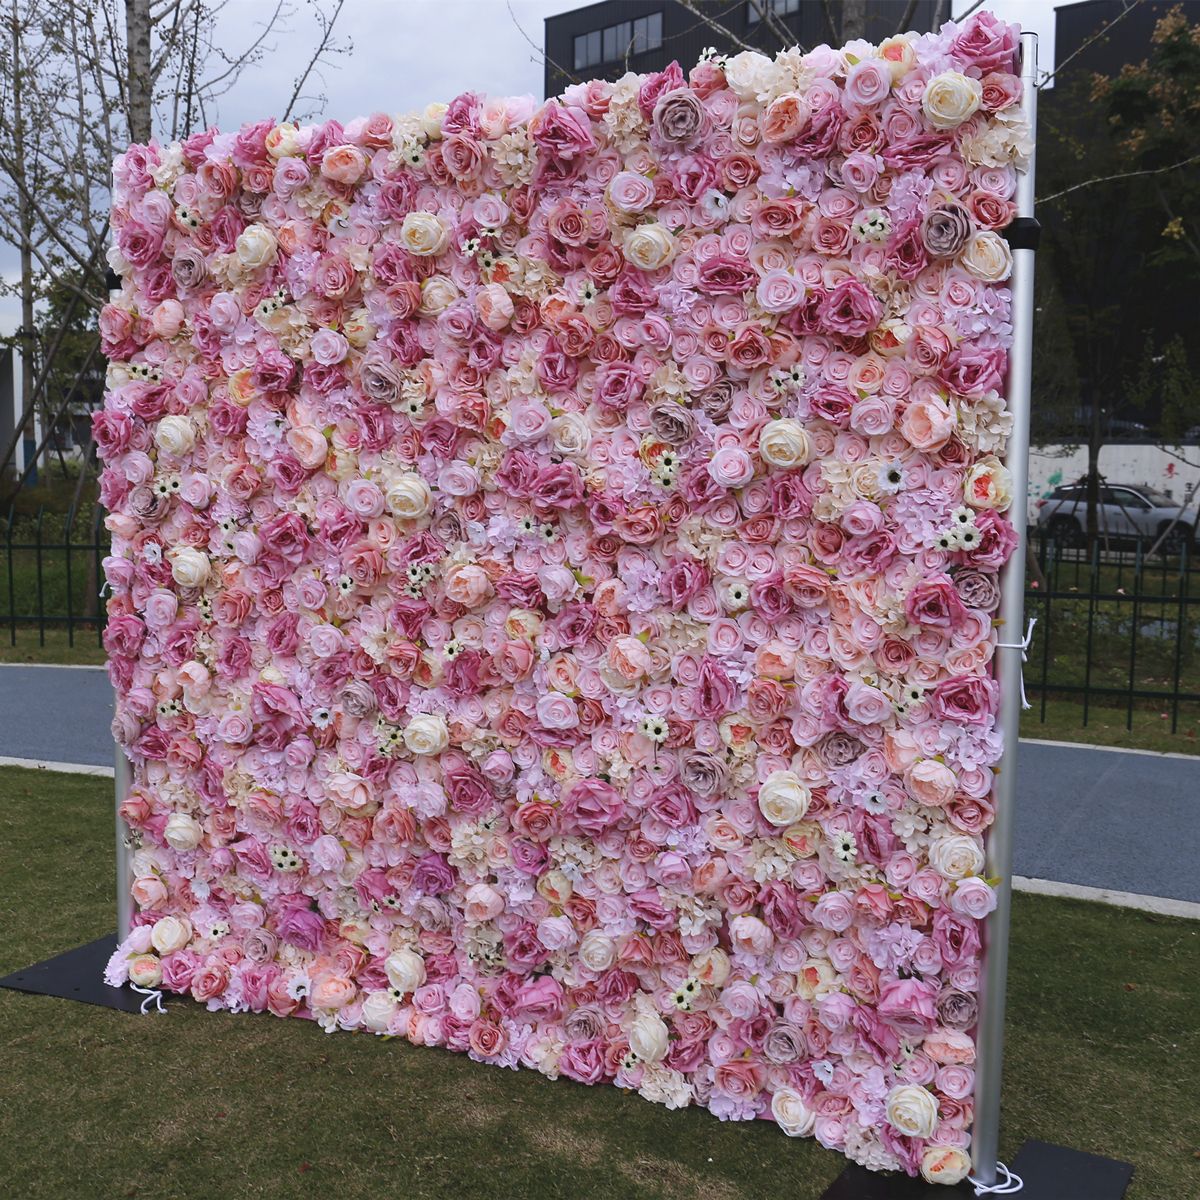 Kain pink ngisor tembok latar mburi tembok kembang Pernikahan lan dekorasi wedding net Tembok seni mawar abang